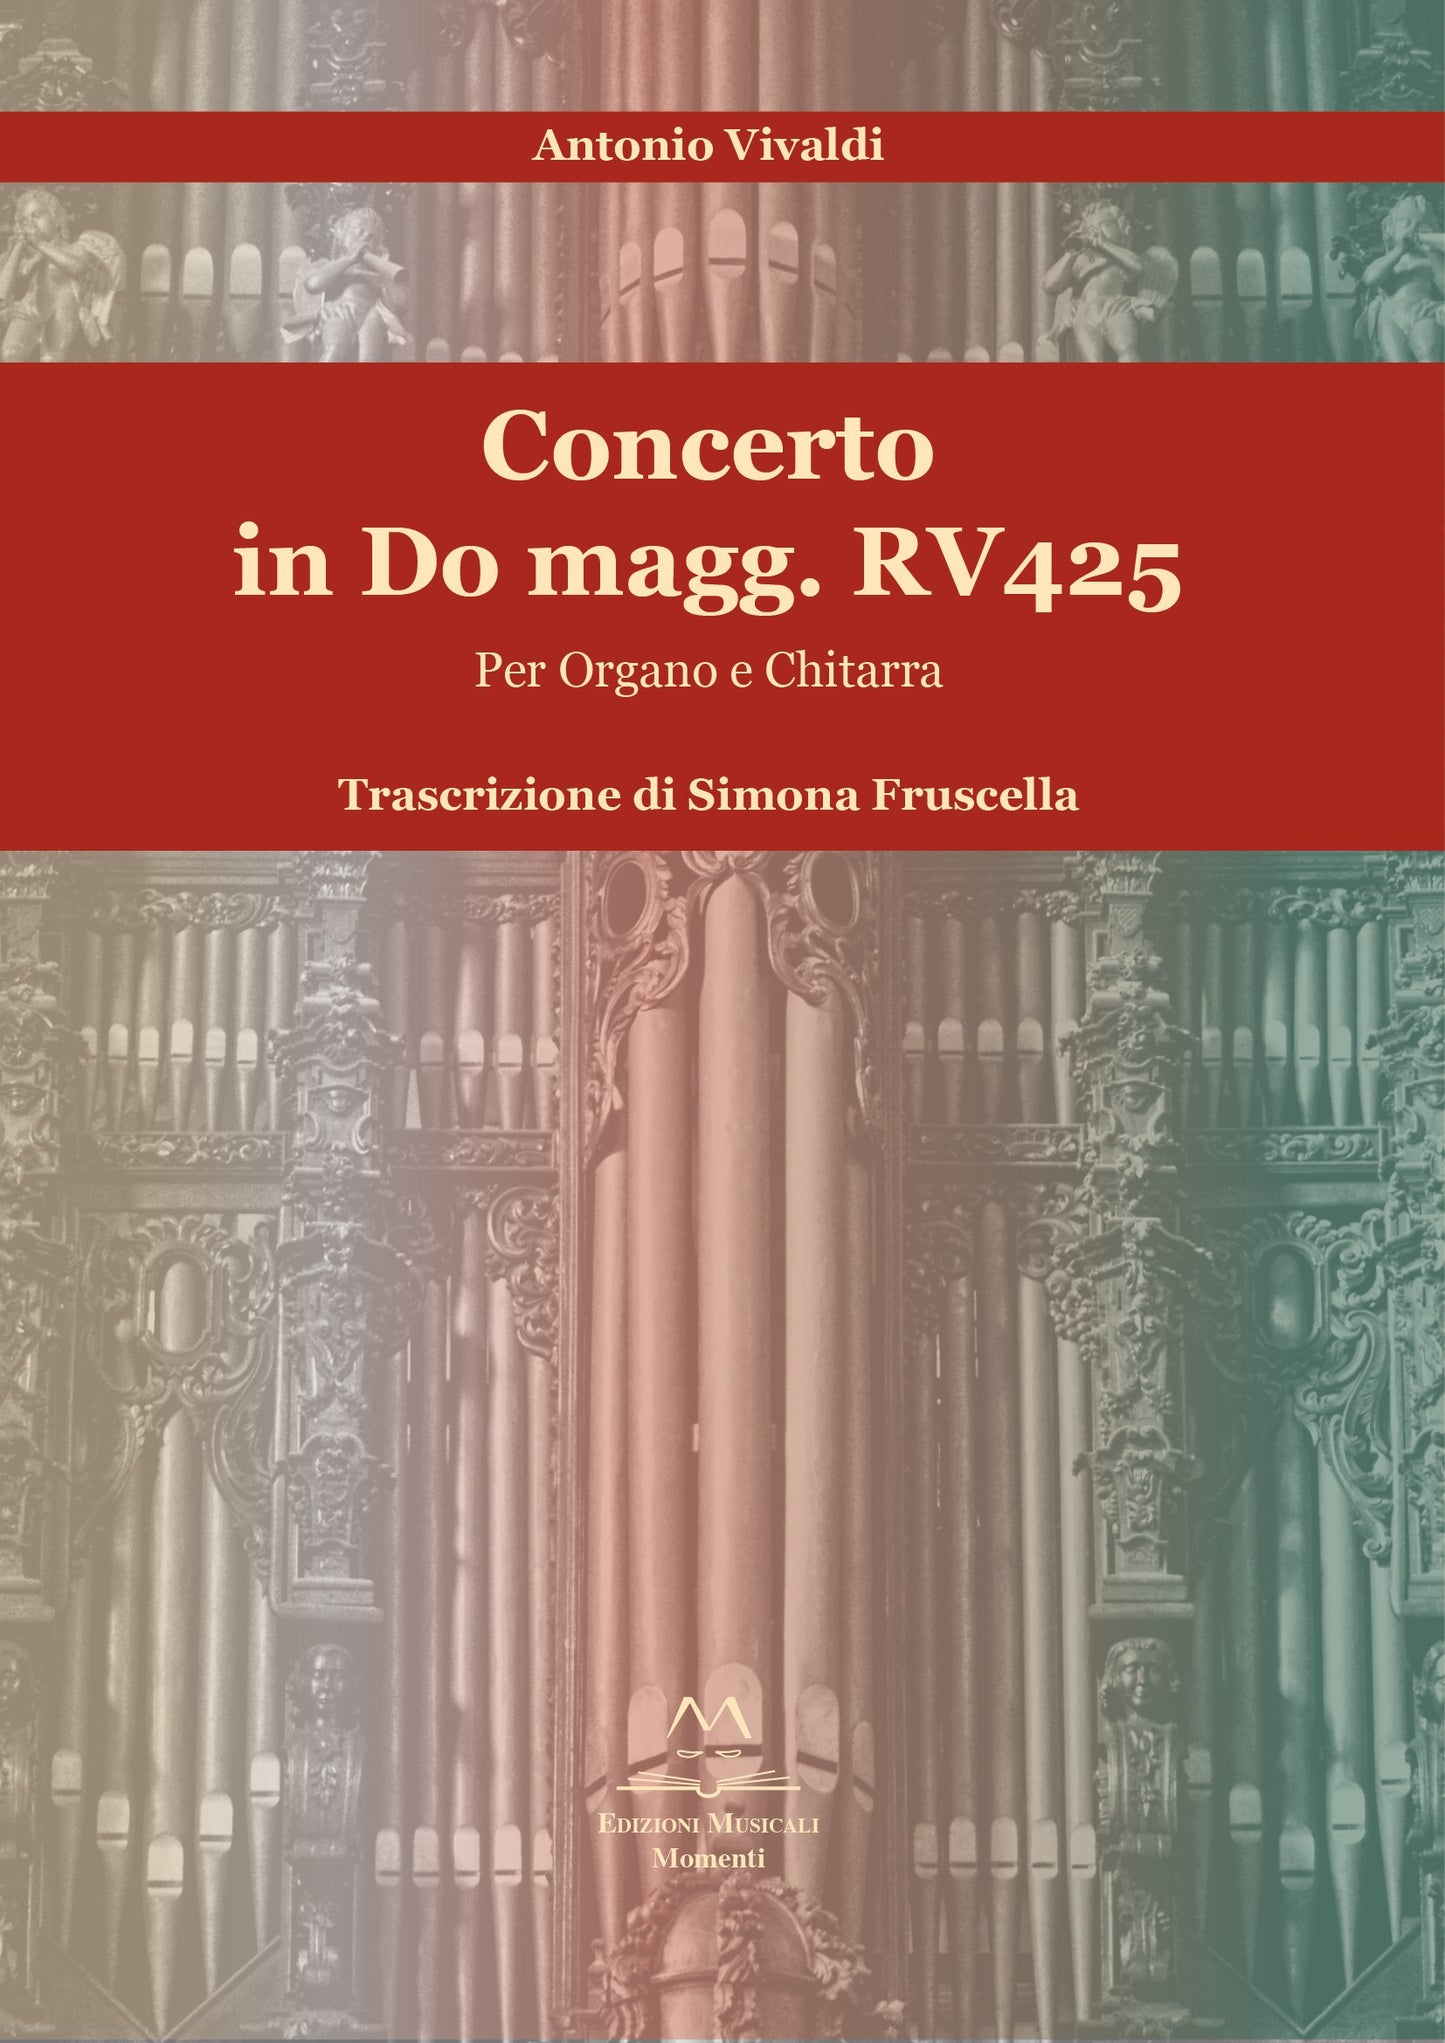 Concerto in Do magg. RV425 trascrizione di Simona Fruscella